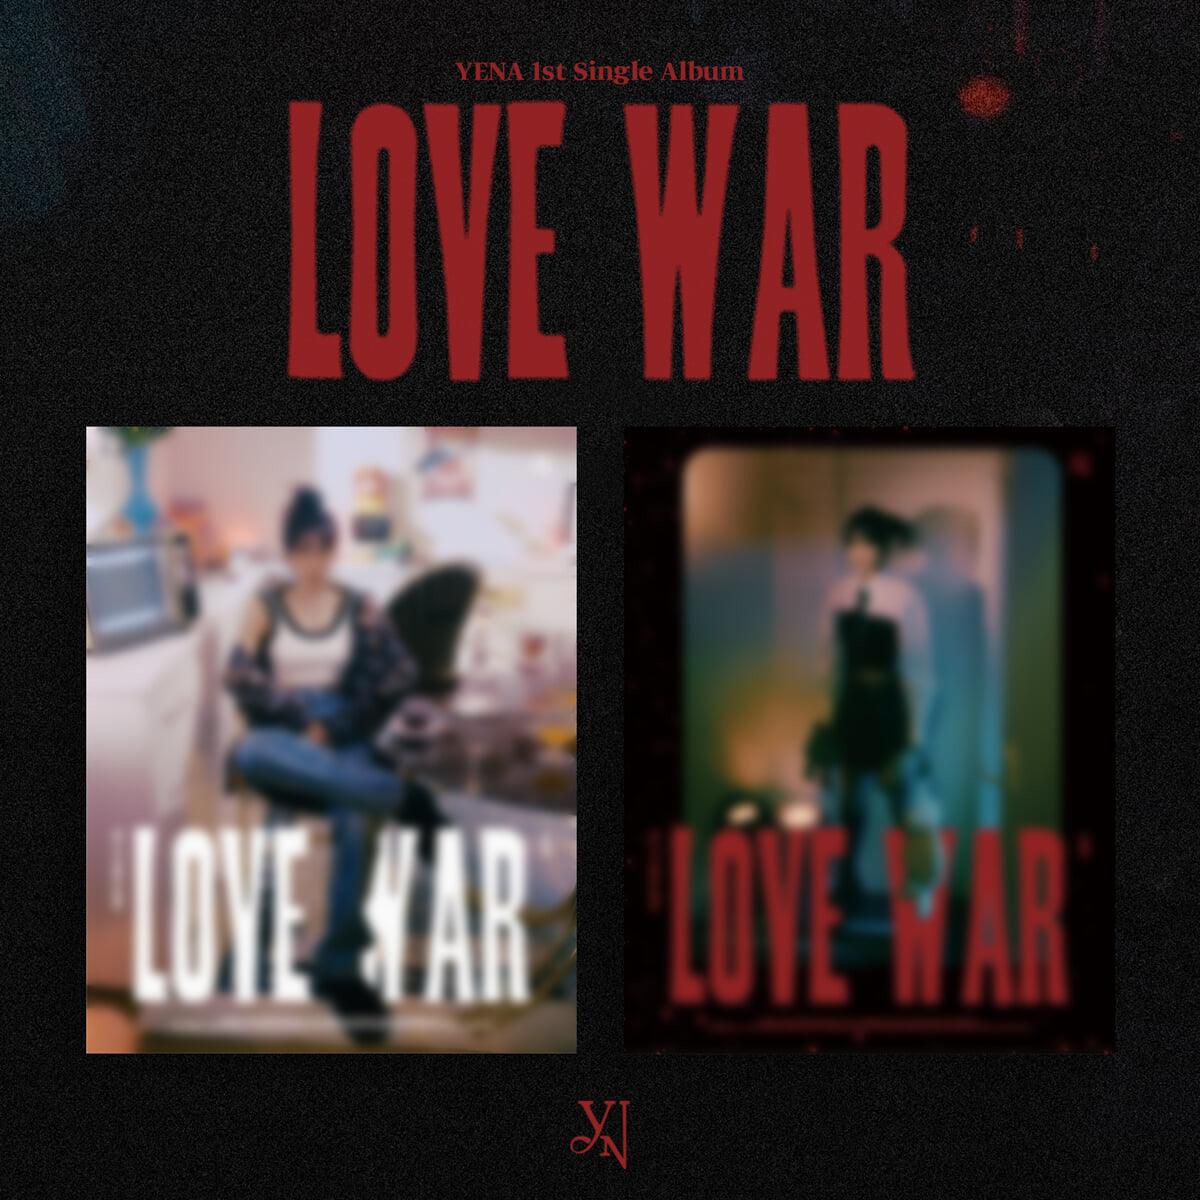 YENA Single Album Vol. 1 - Love War (Random) - KKANG